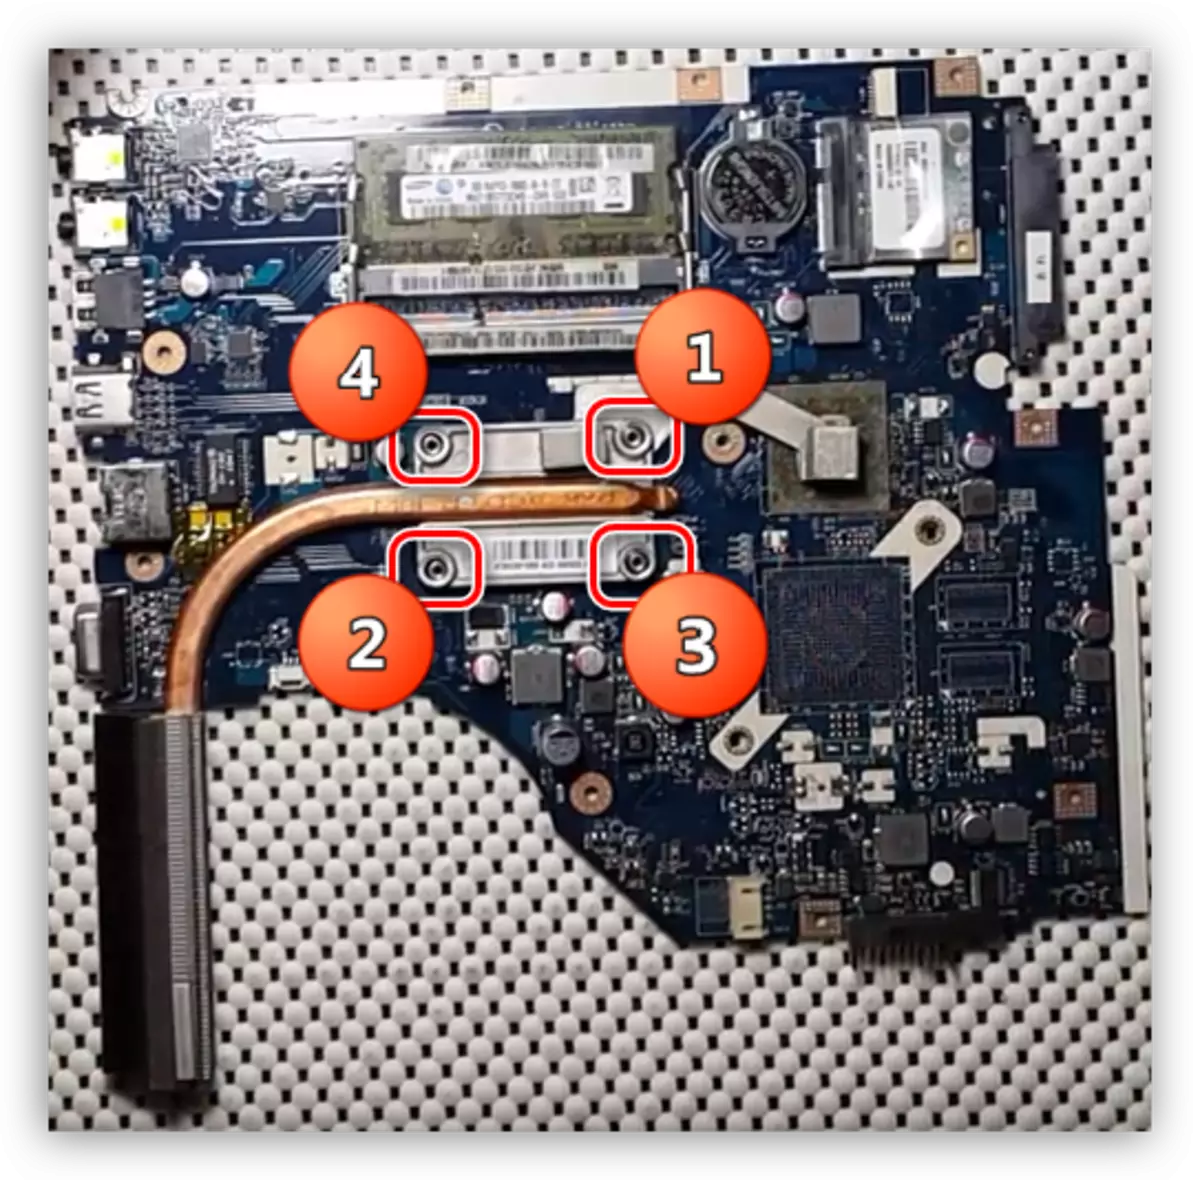 Procedemento de parafuso de rosca en Acer Aspire 5253 Sistema de refrixeración portátil